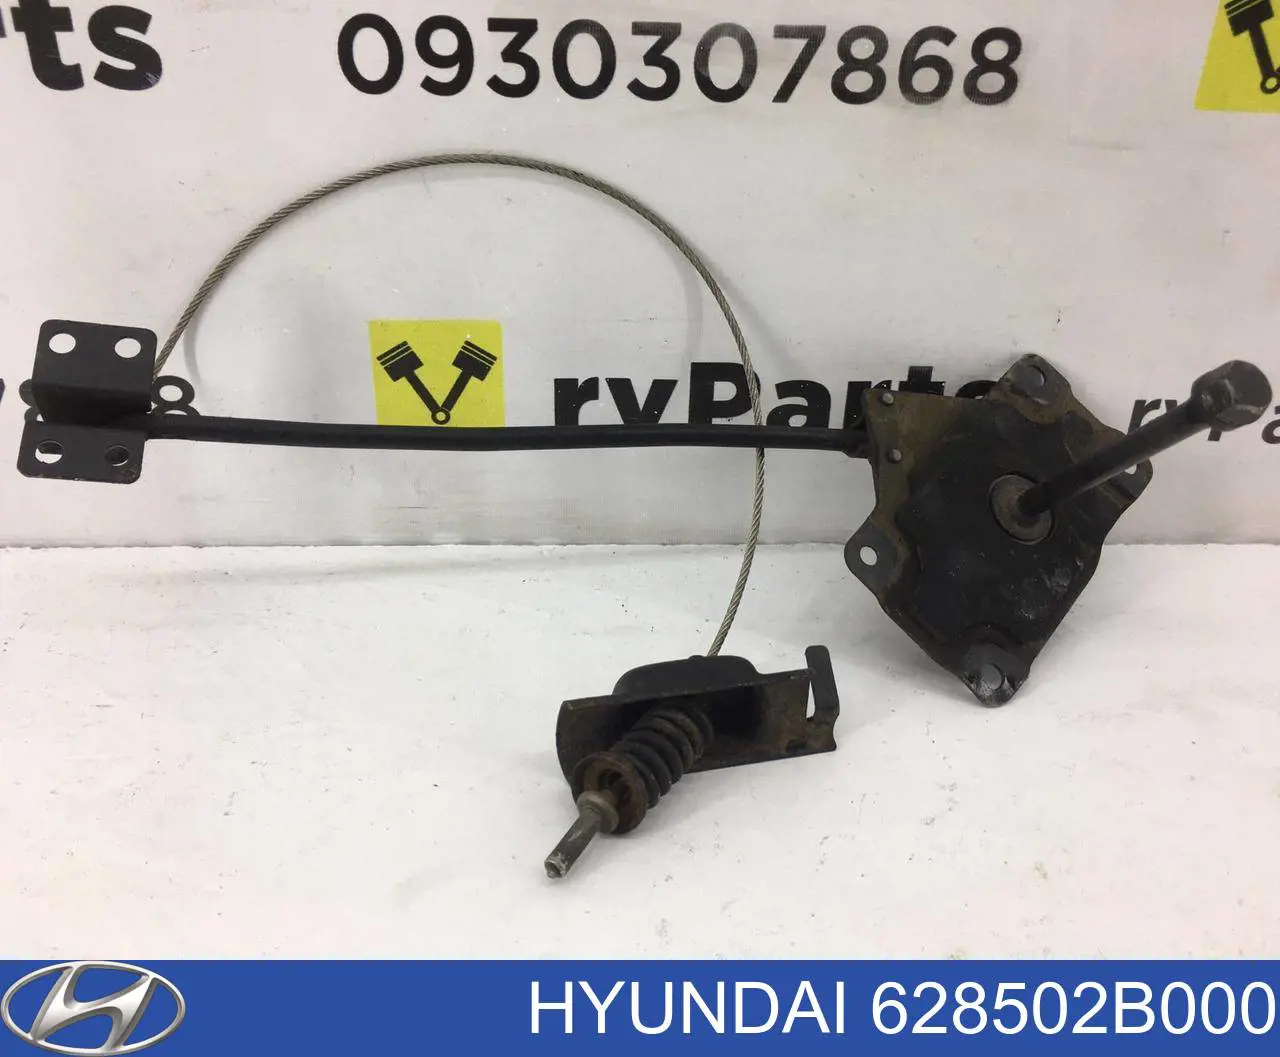 628502B000 Hyundai/Kia soporte de rueda de repuesto